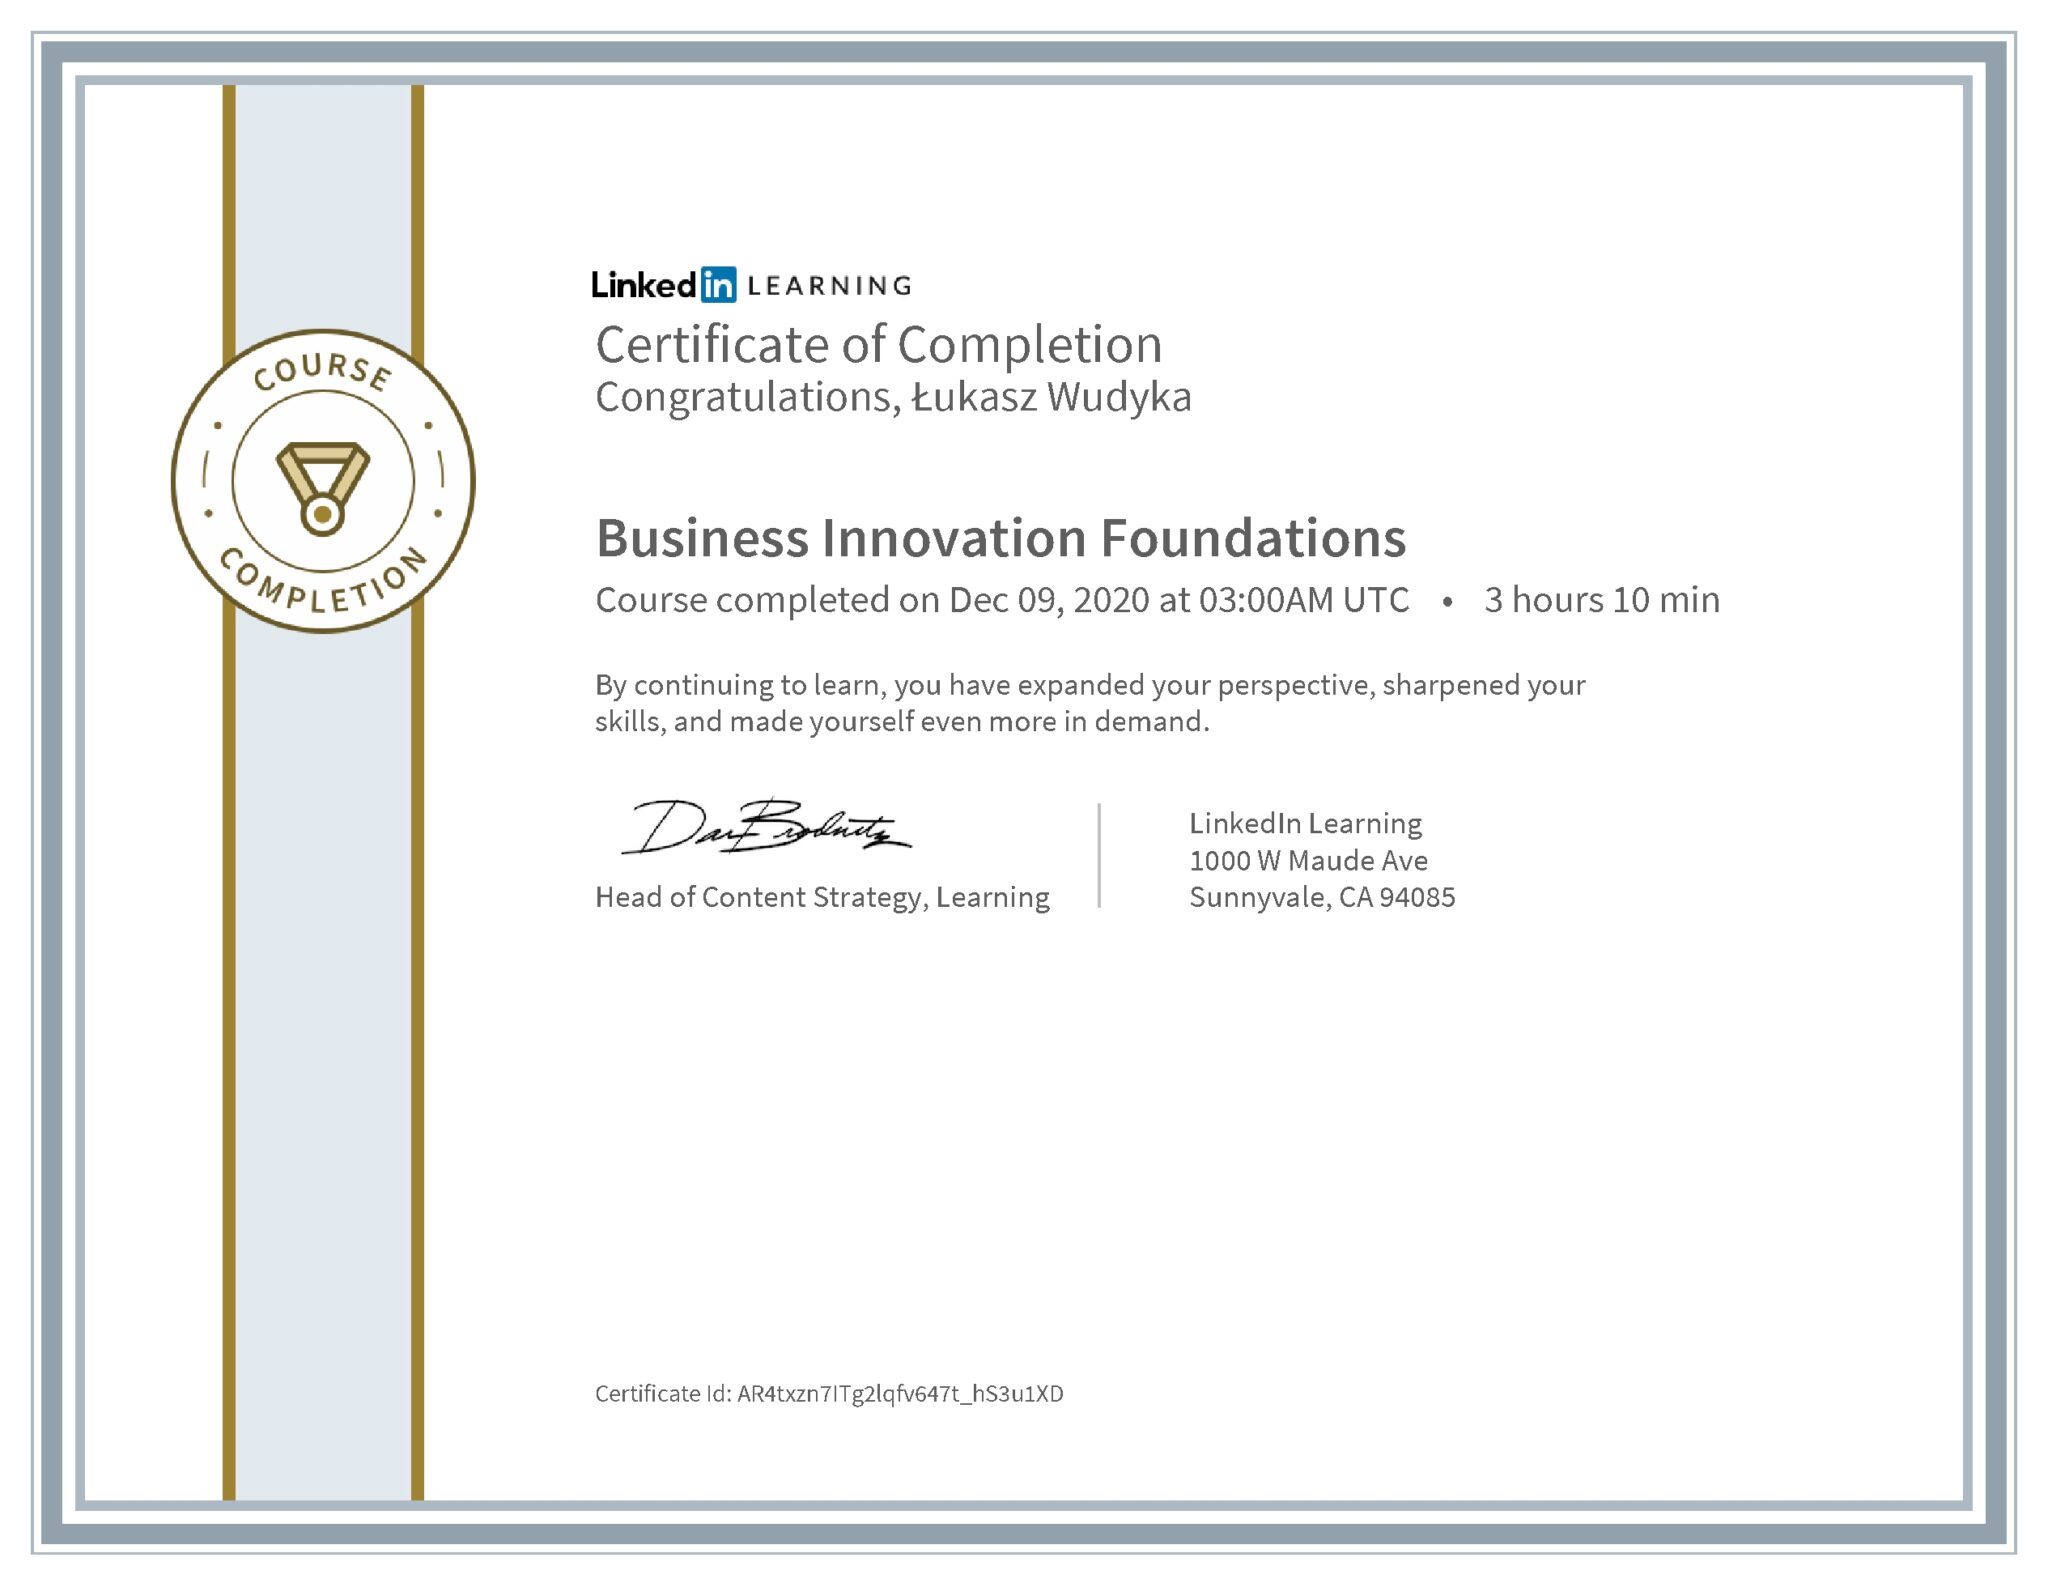 Łukasz Wudyka certyfikat LinkedIn Business Innovation Foundations